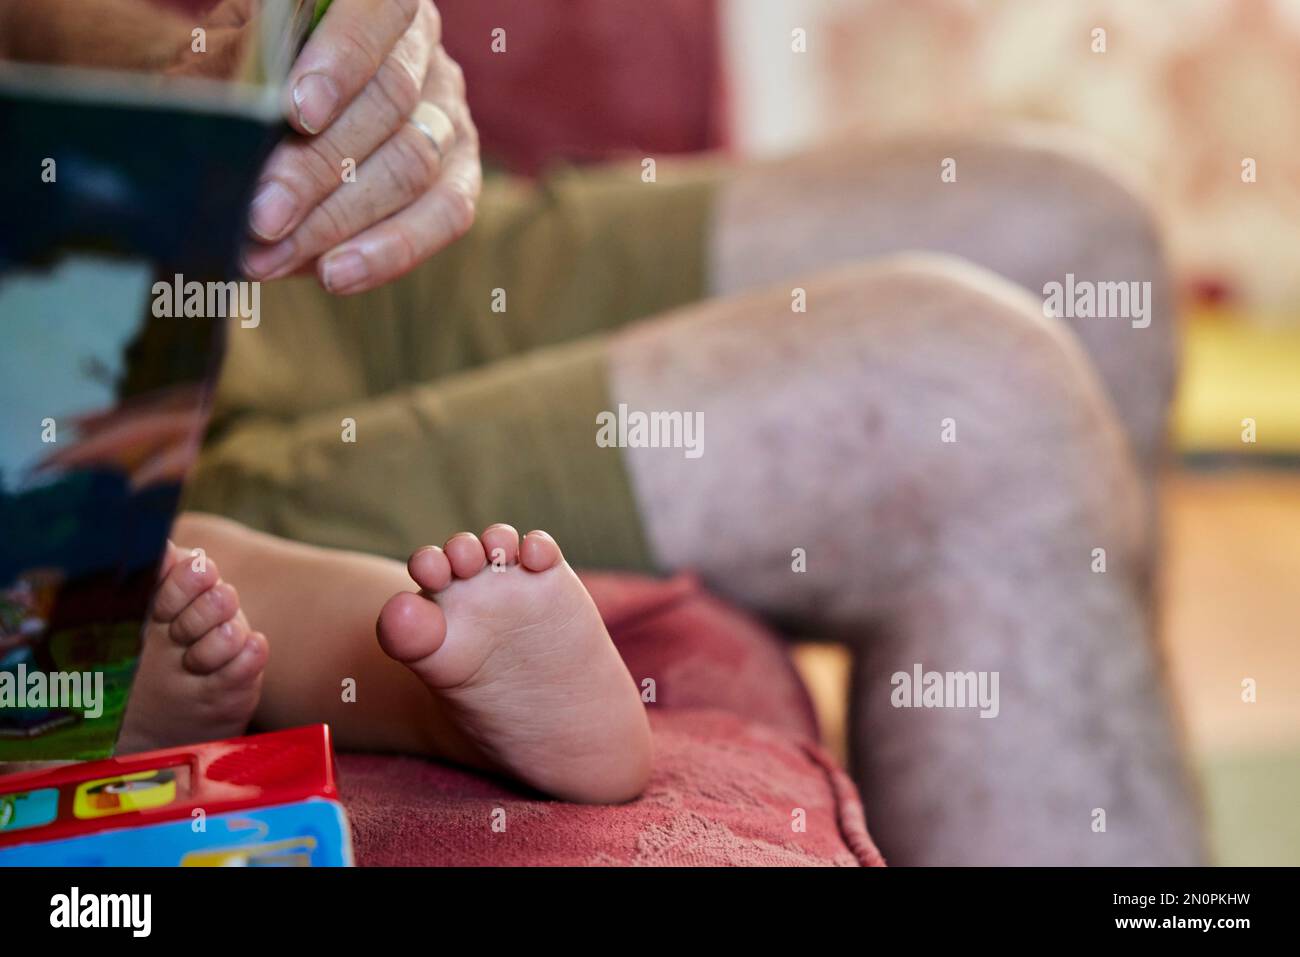 Primo piano della lettura del nonno al bambino, vista dei piedi nudi del bambino e delle ginocchia del nonno. Foto Stock